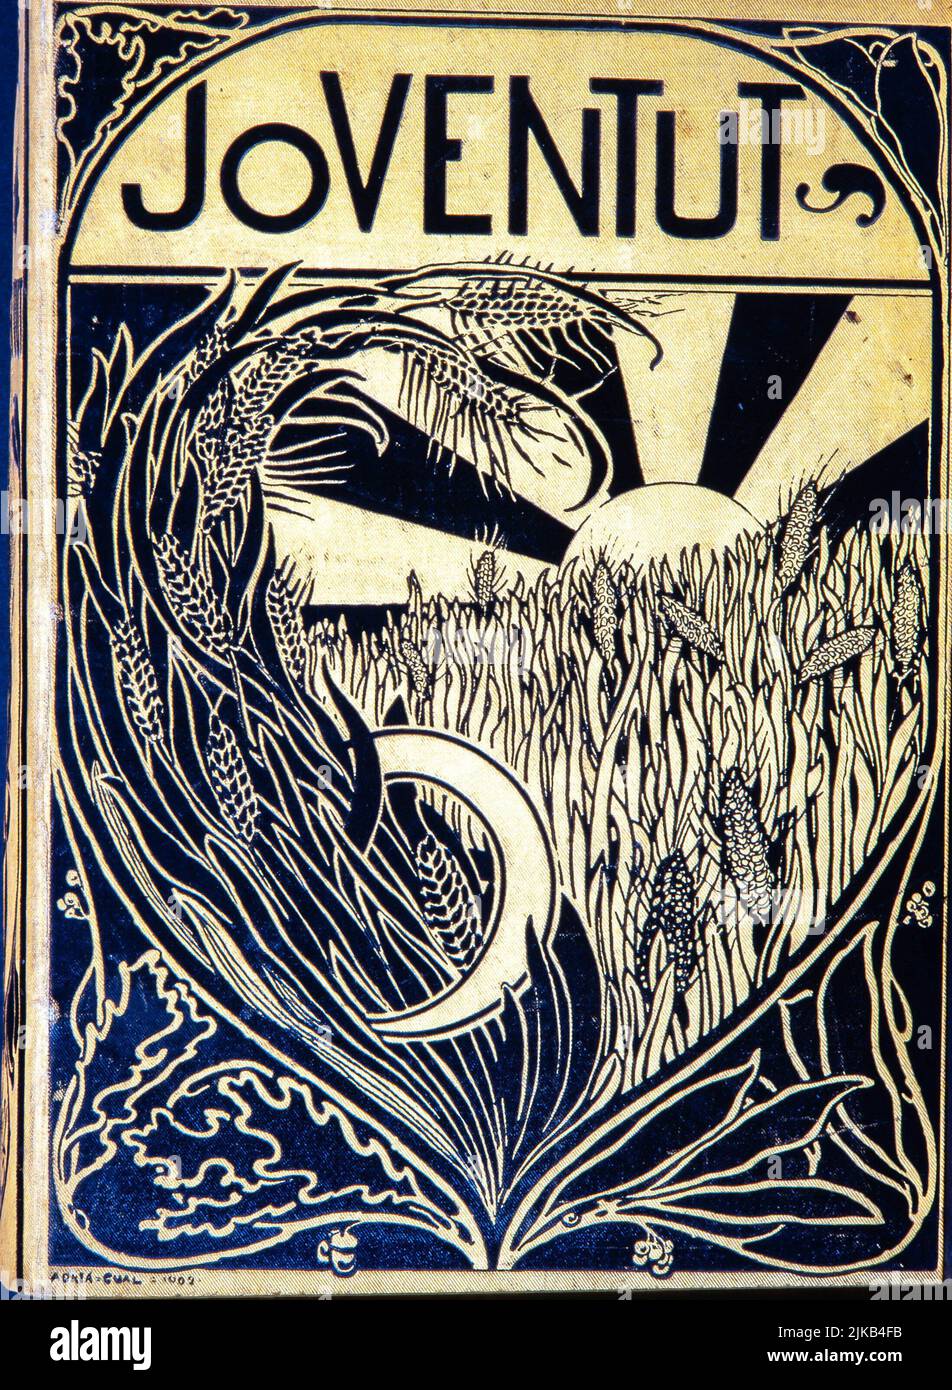 Adrià Gual / Portada de la revista Joventut, nº 159. Febrero de 1903. Institut del Teatre de Barcelona. Stock Photo